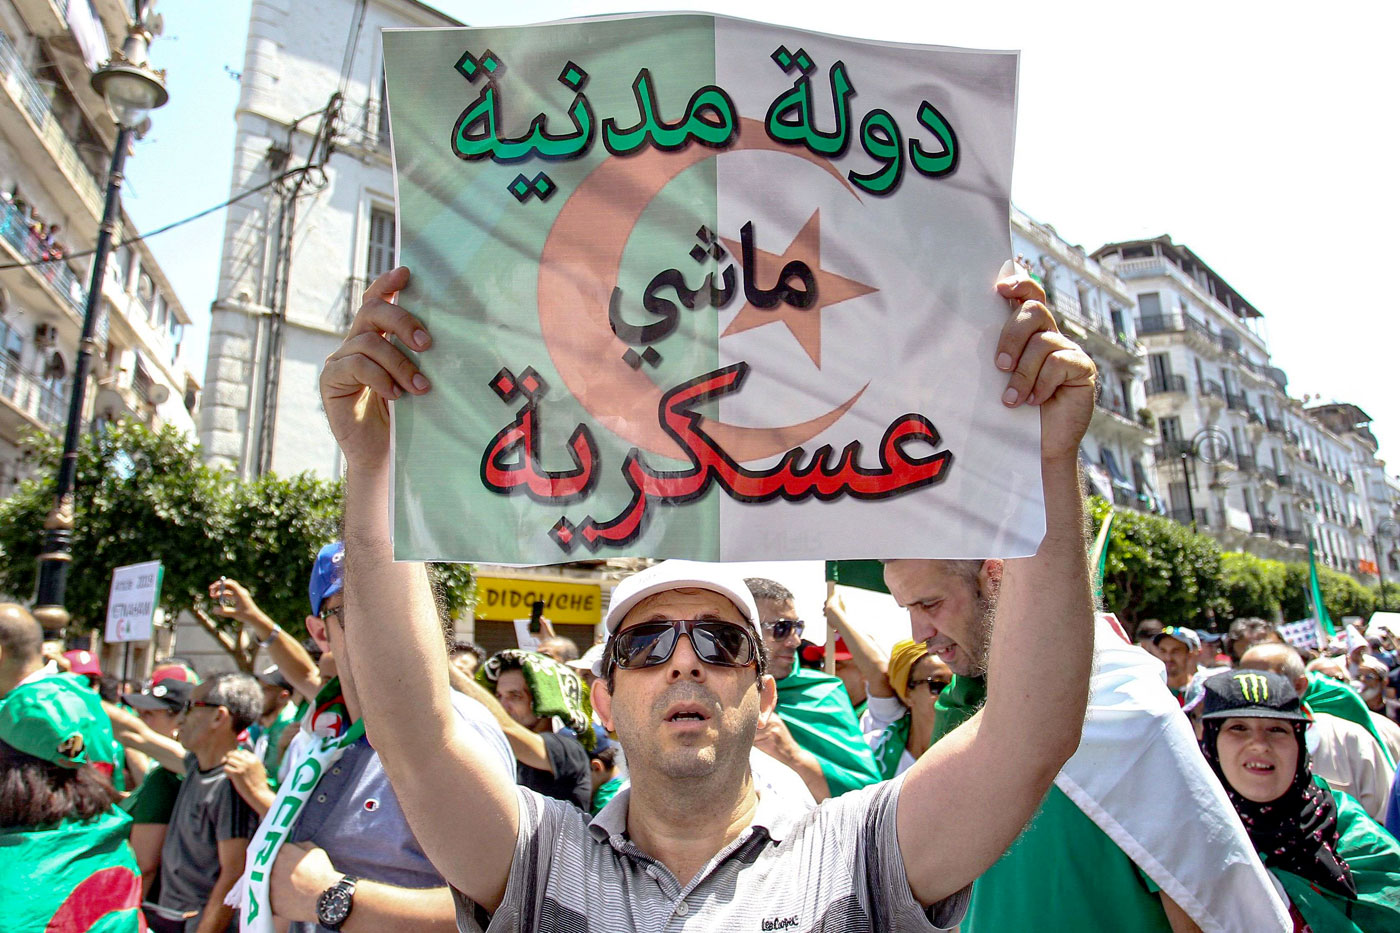 بعد تشديد قبضته الأمنية على الحراك الشعبي.. النظام الجزائري يتسبب في تصاعد كبير لوتيرة الاعتقالات والقمع